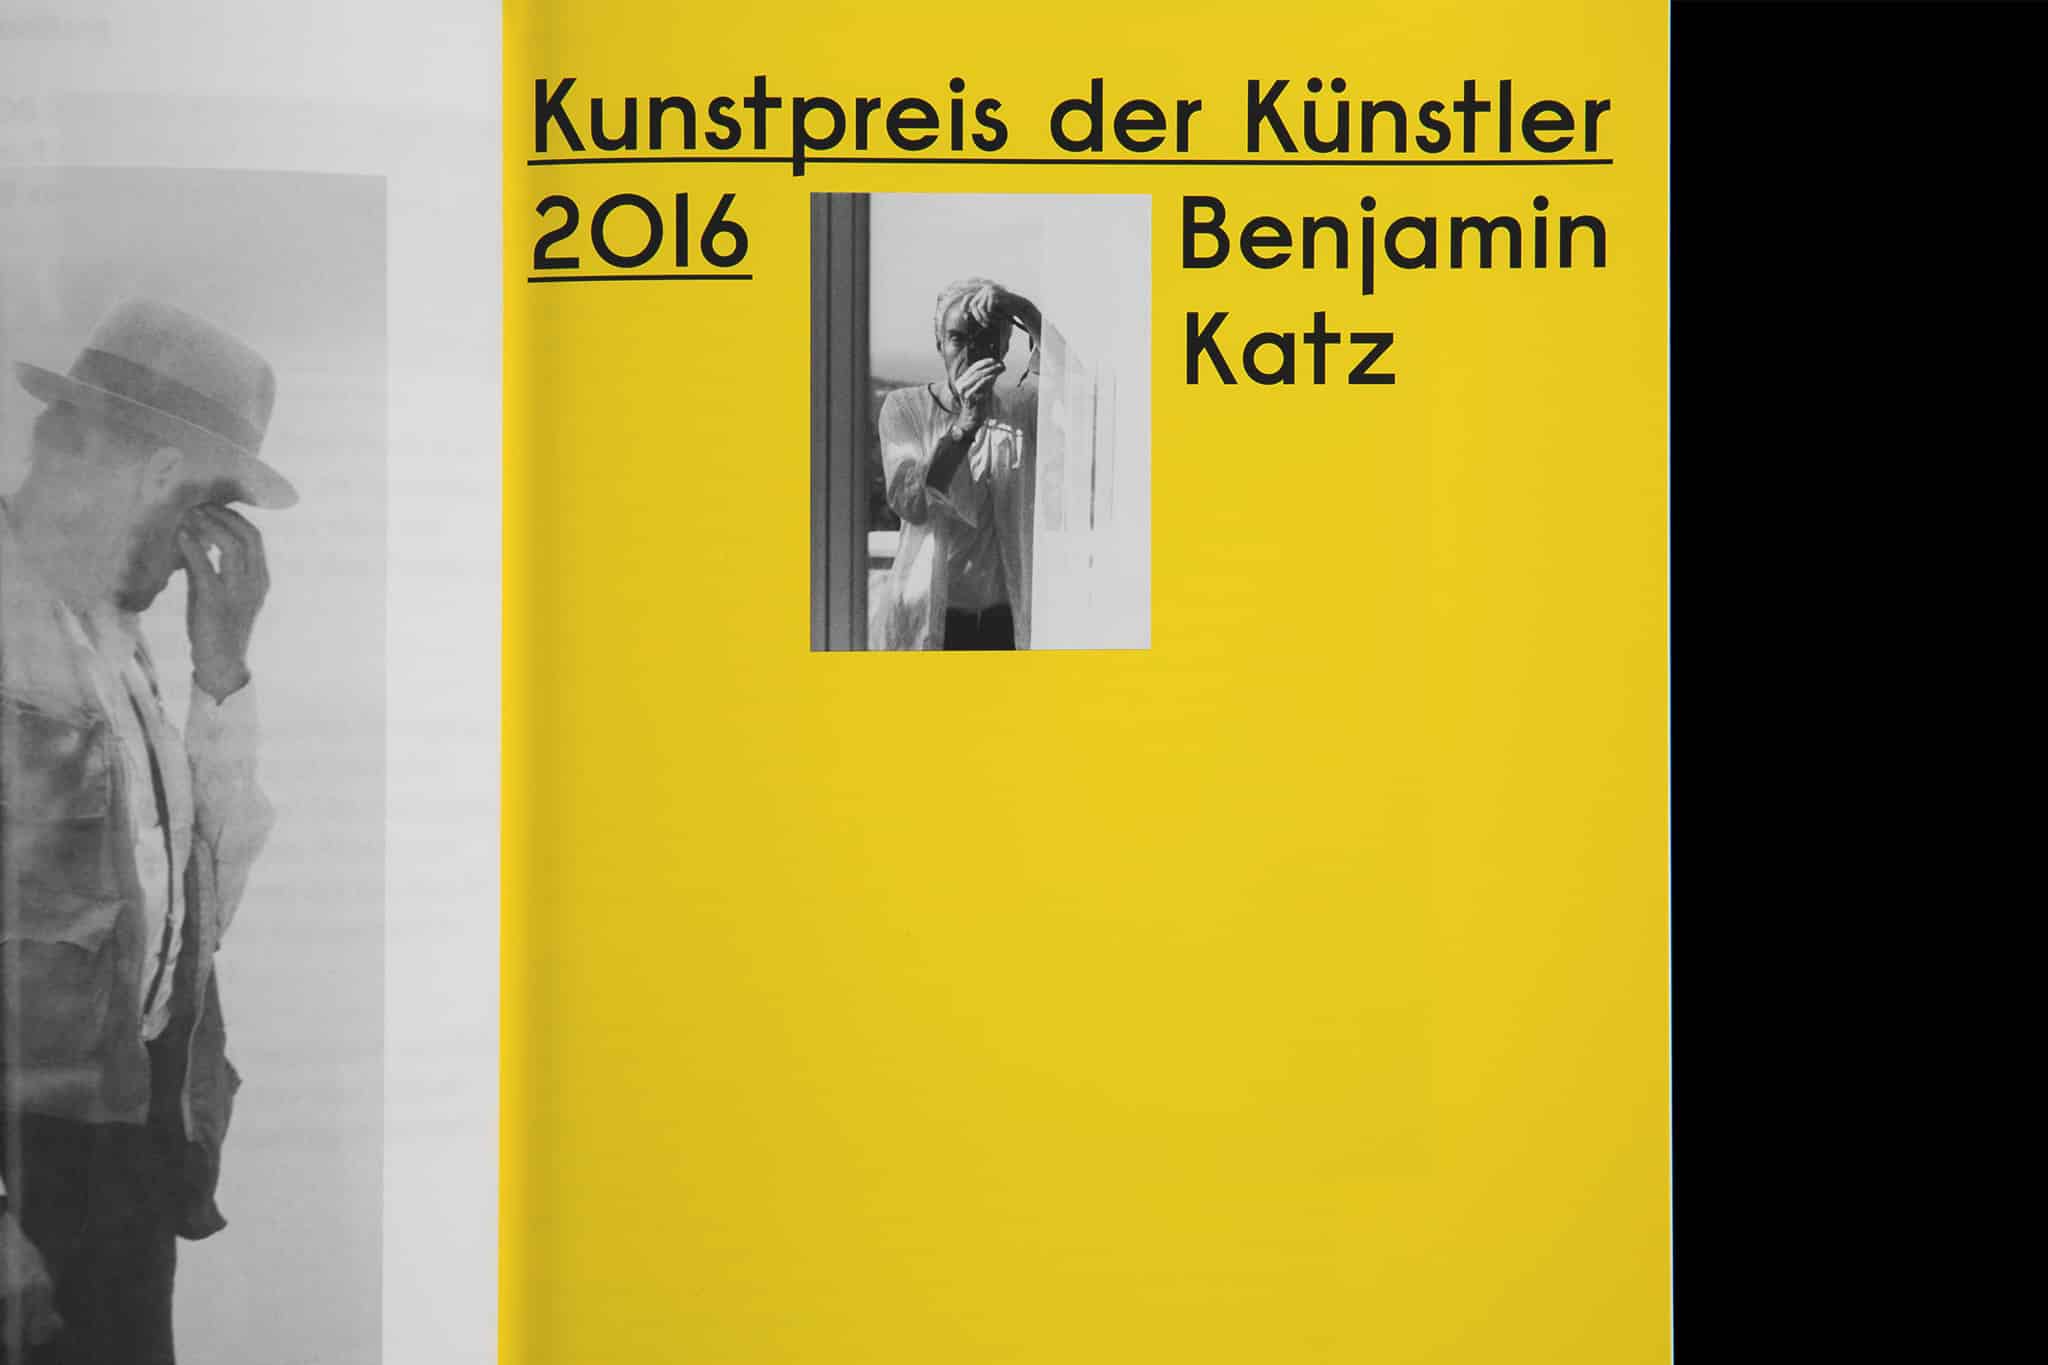 Detailaufnahme Kunstkatalog mit Portrait von Benjamin Katz / Detail view art catalog with portrait of Benjamin Katz